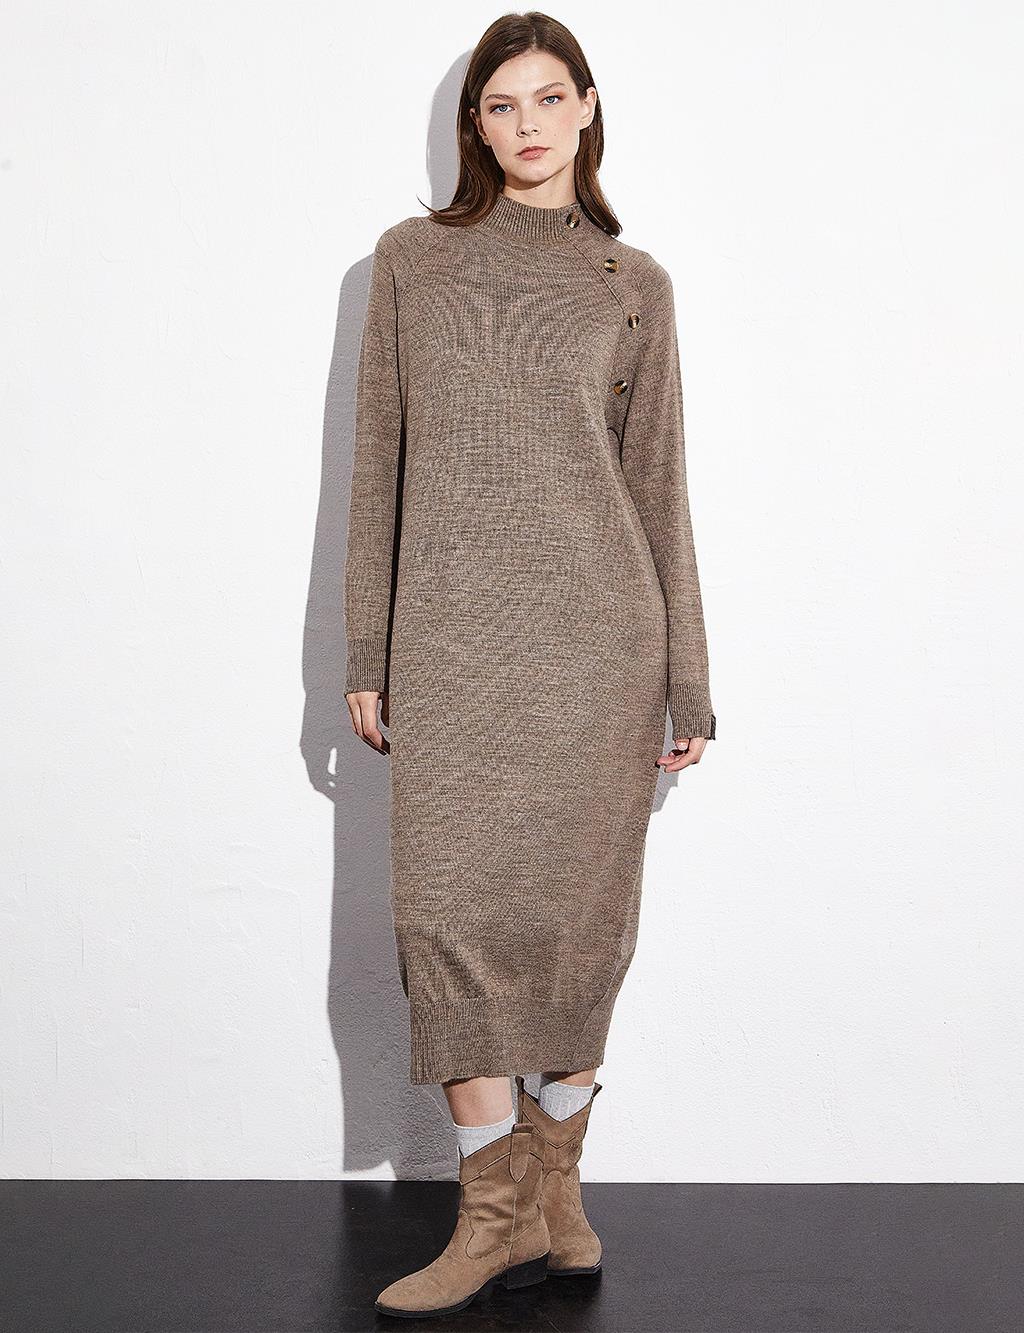 Raglan Sleeve Half Turtleneck Knitwear Dress Mink